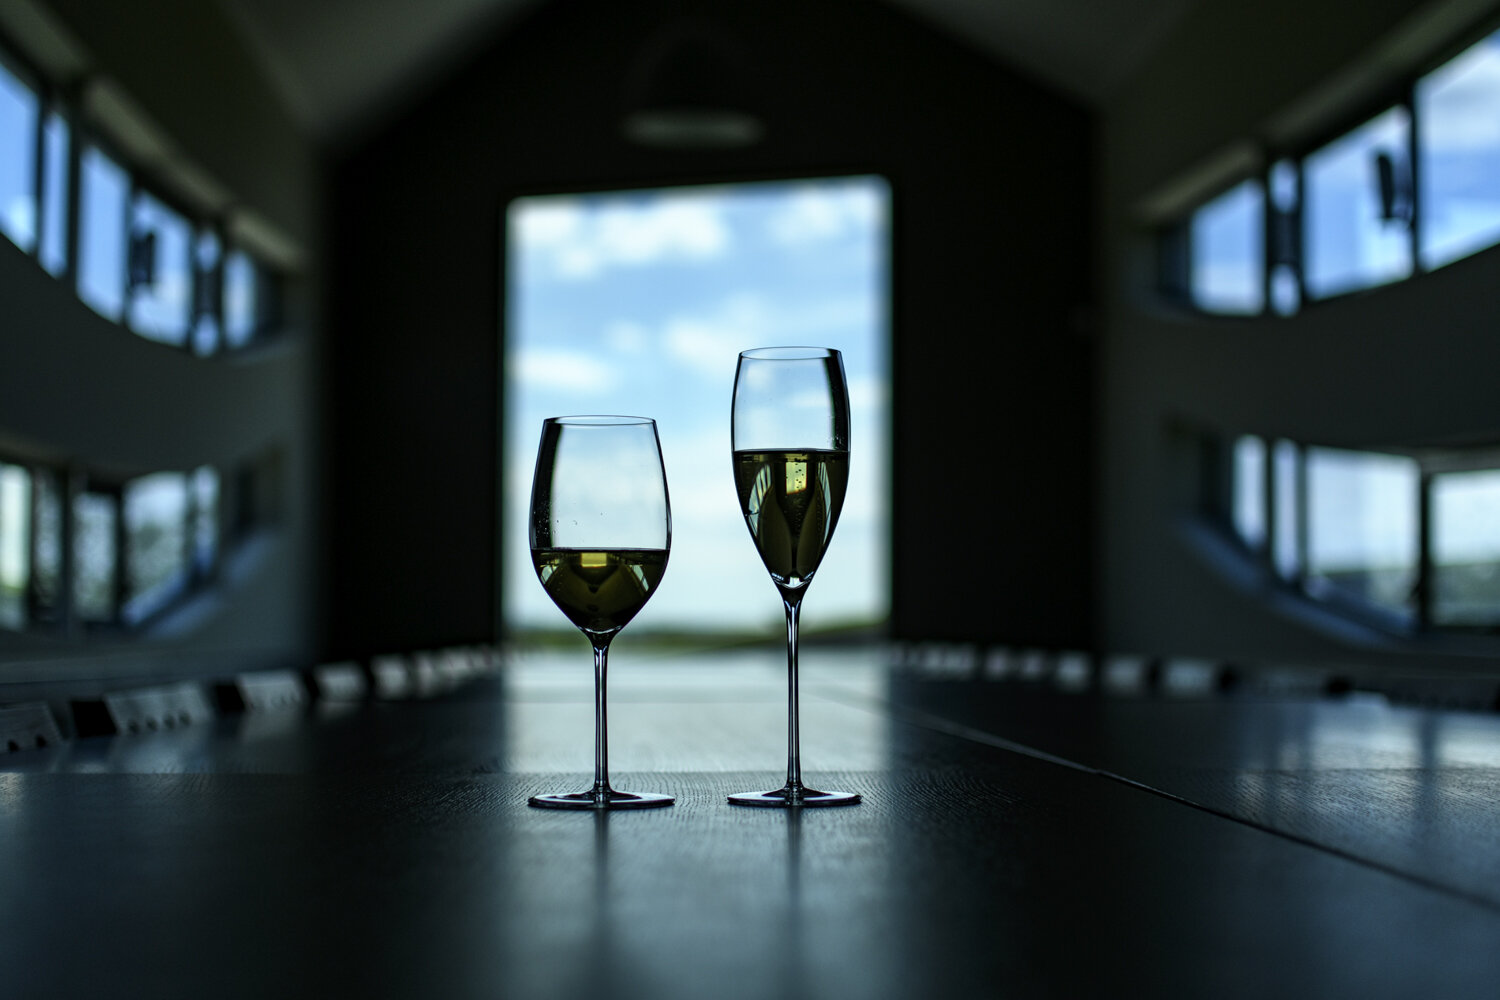 Somlói és balatonlellei pezsgőt is díjaztak a világ legjobbjai között